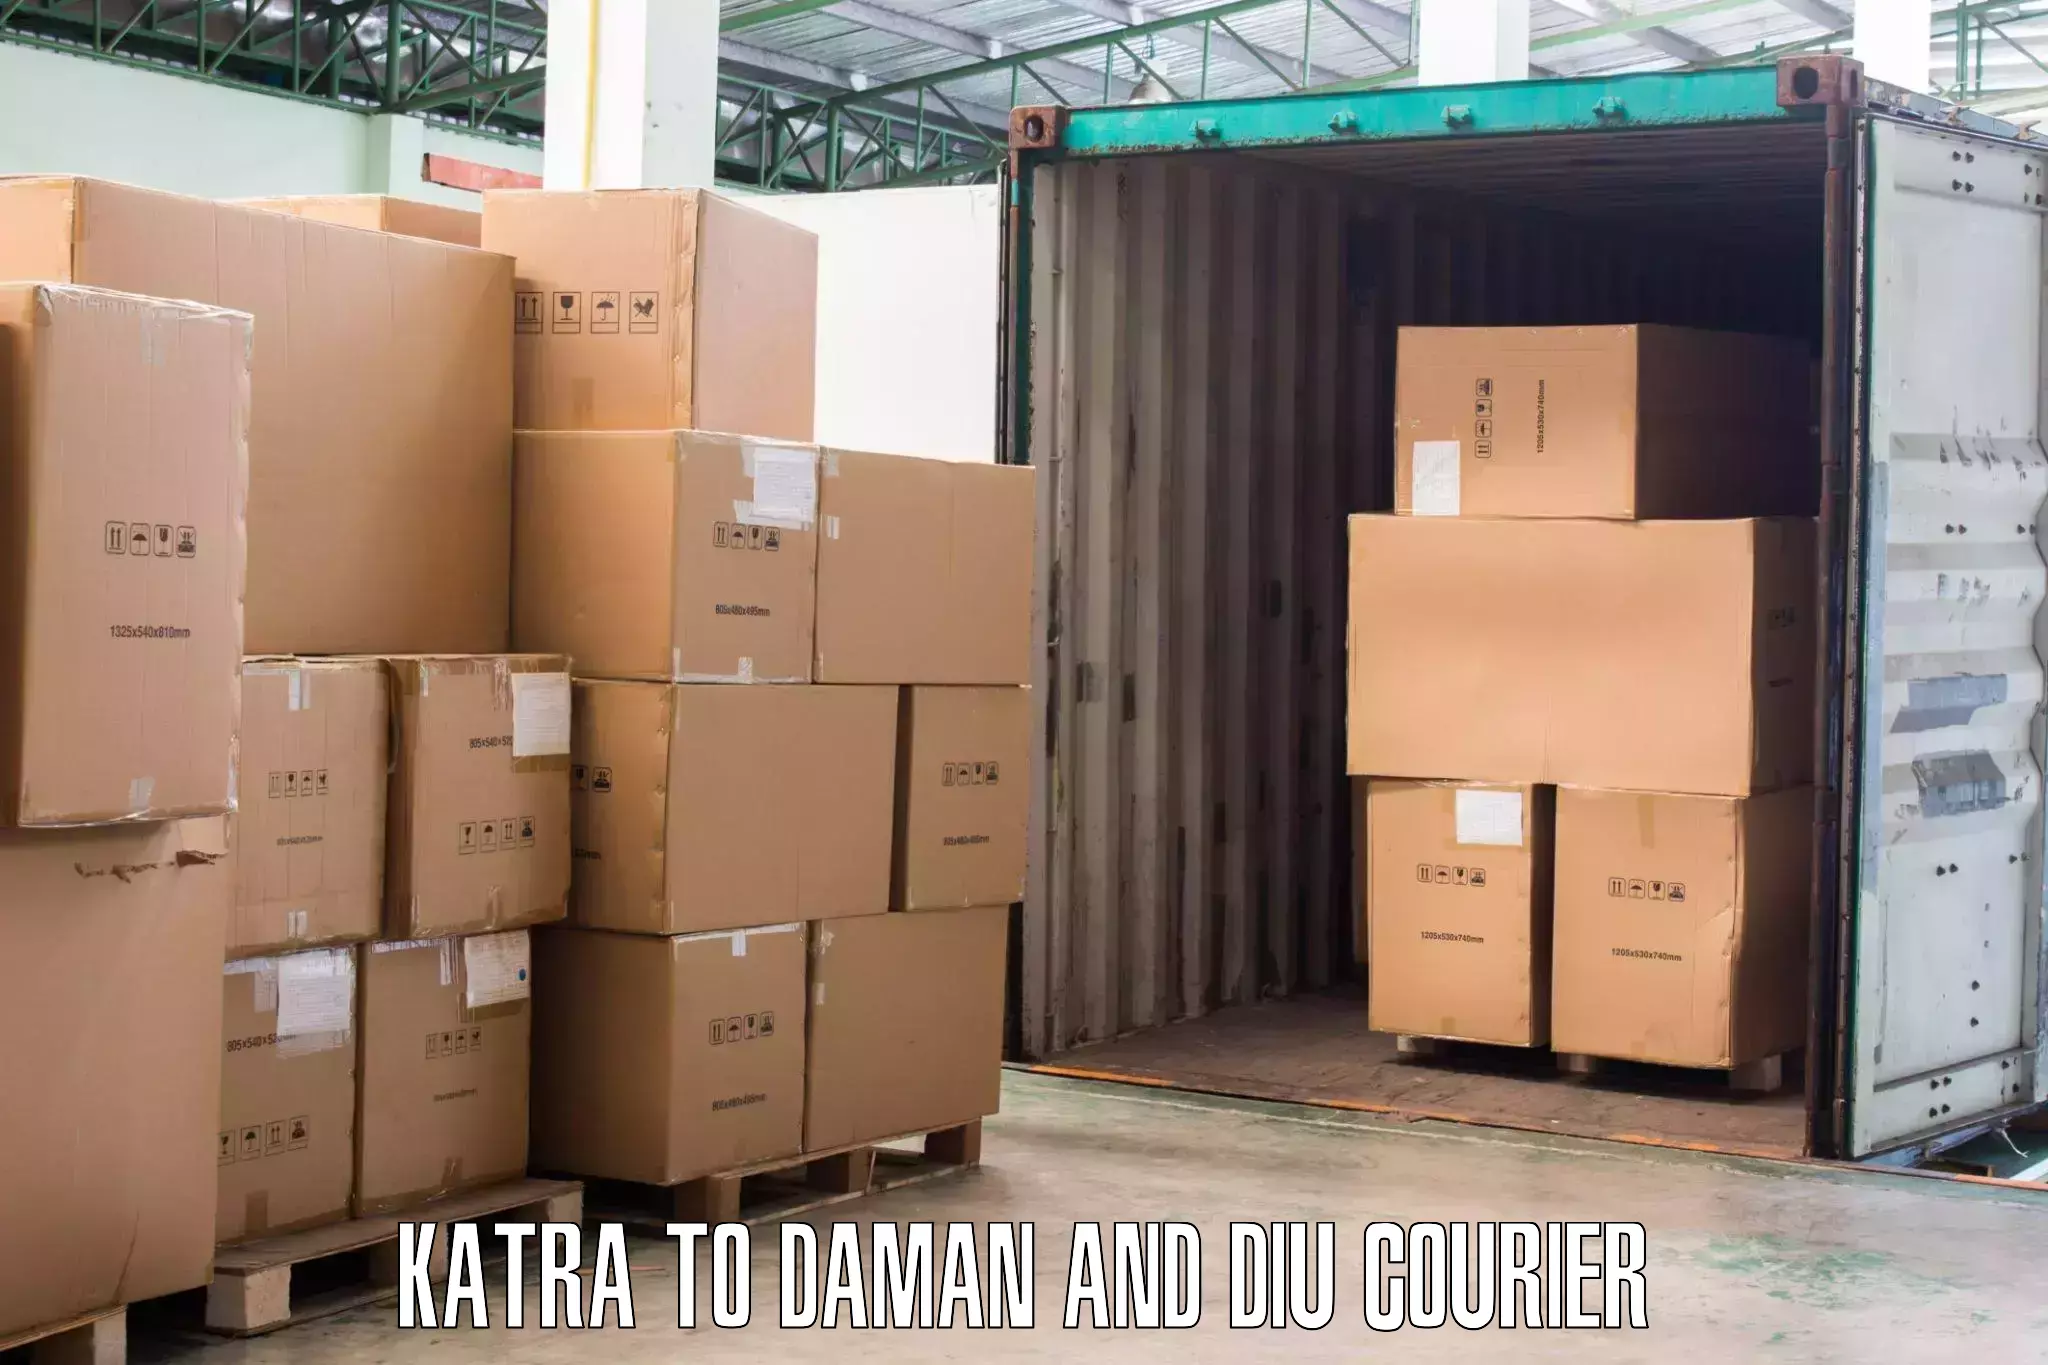 Furniture relocation experts Katra to Daman and Diu